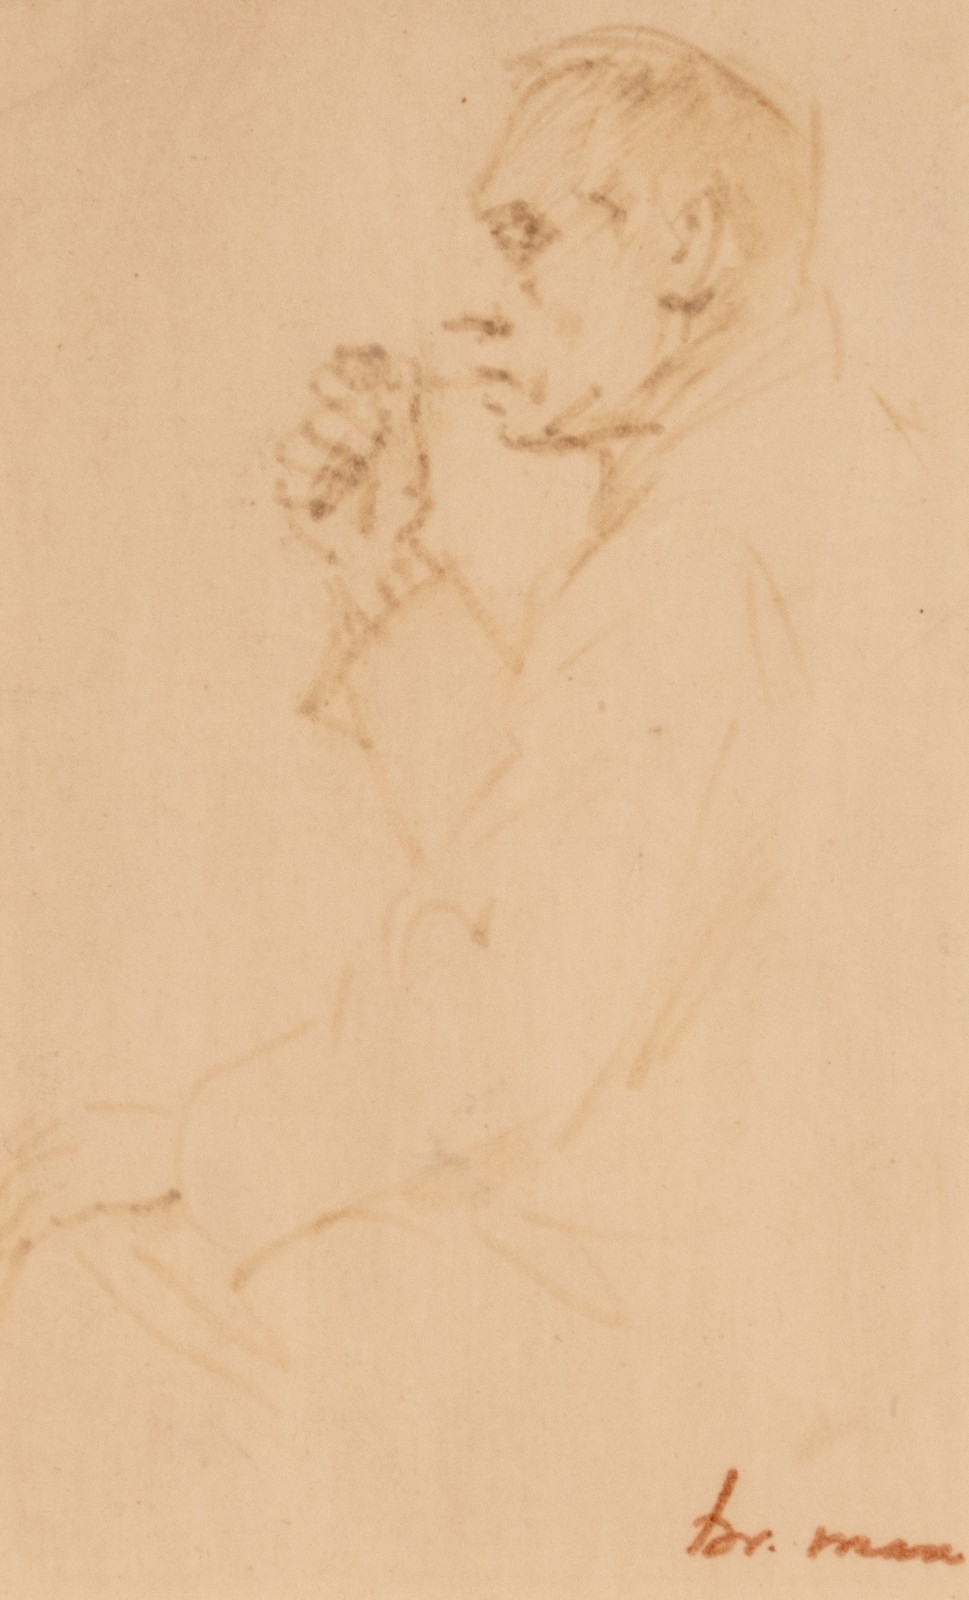 Max Br., portrait of a man, bistre on paper, 8 x 13 cm